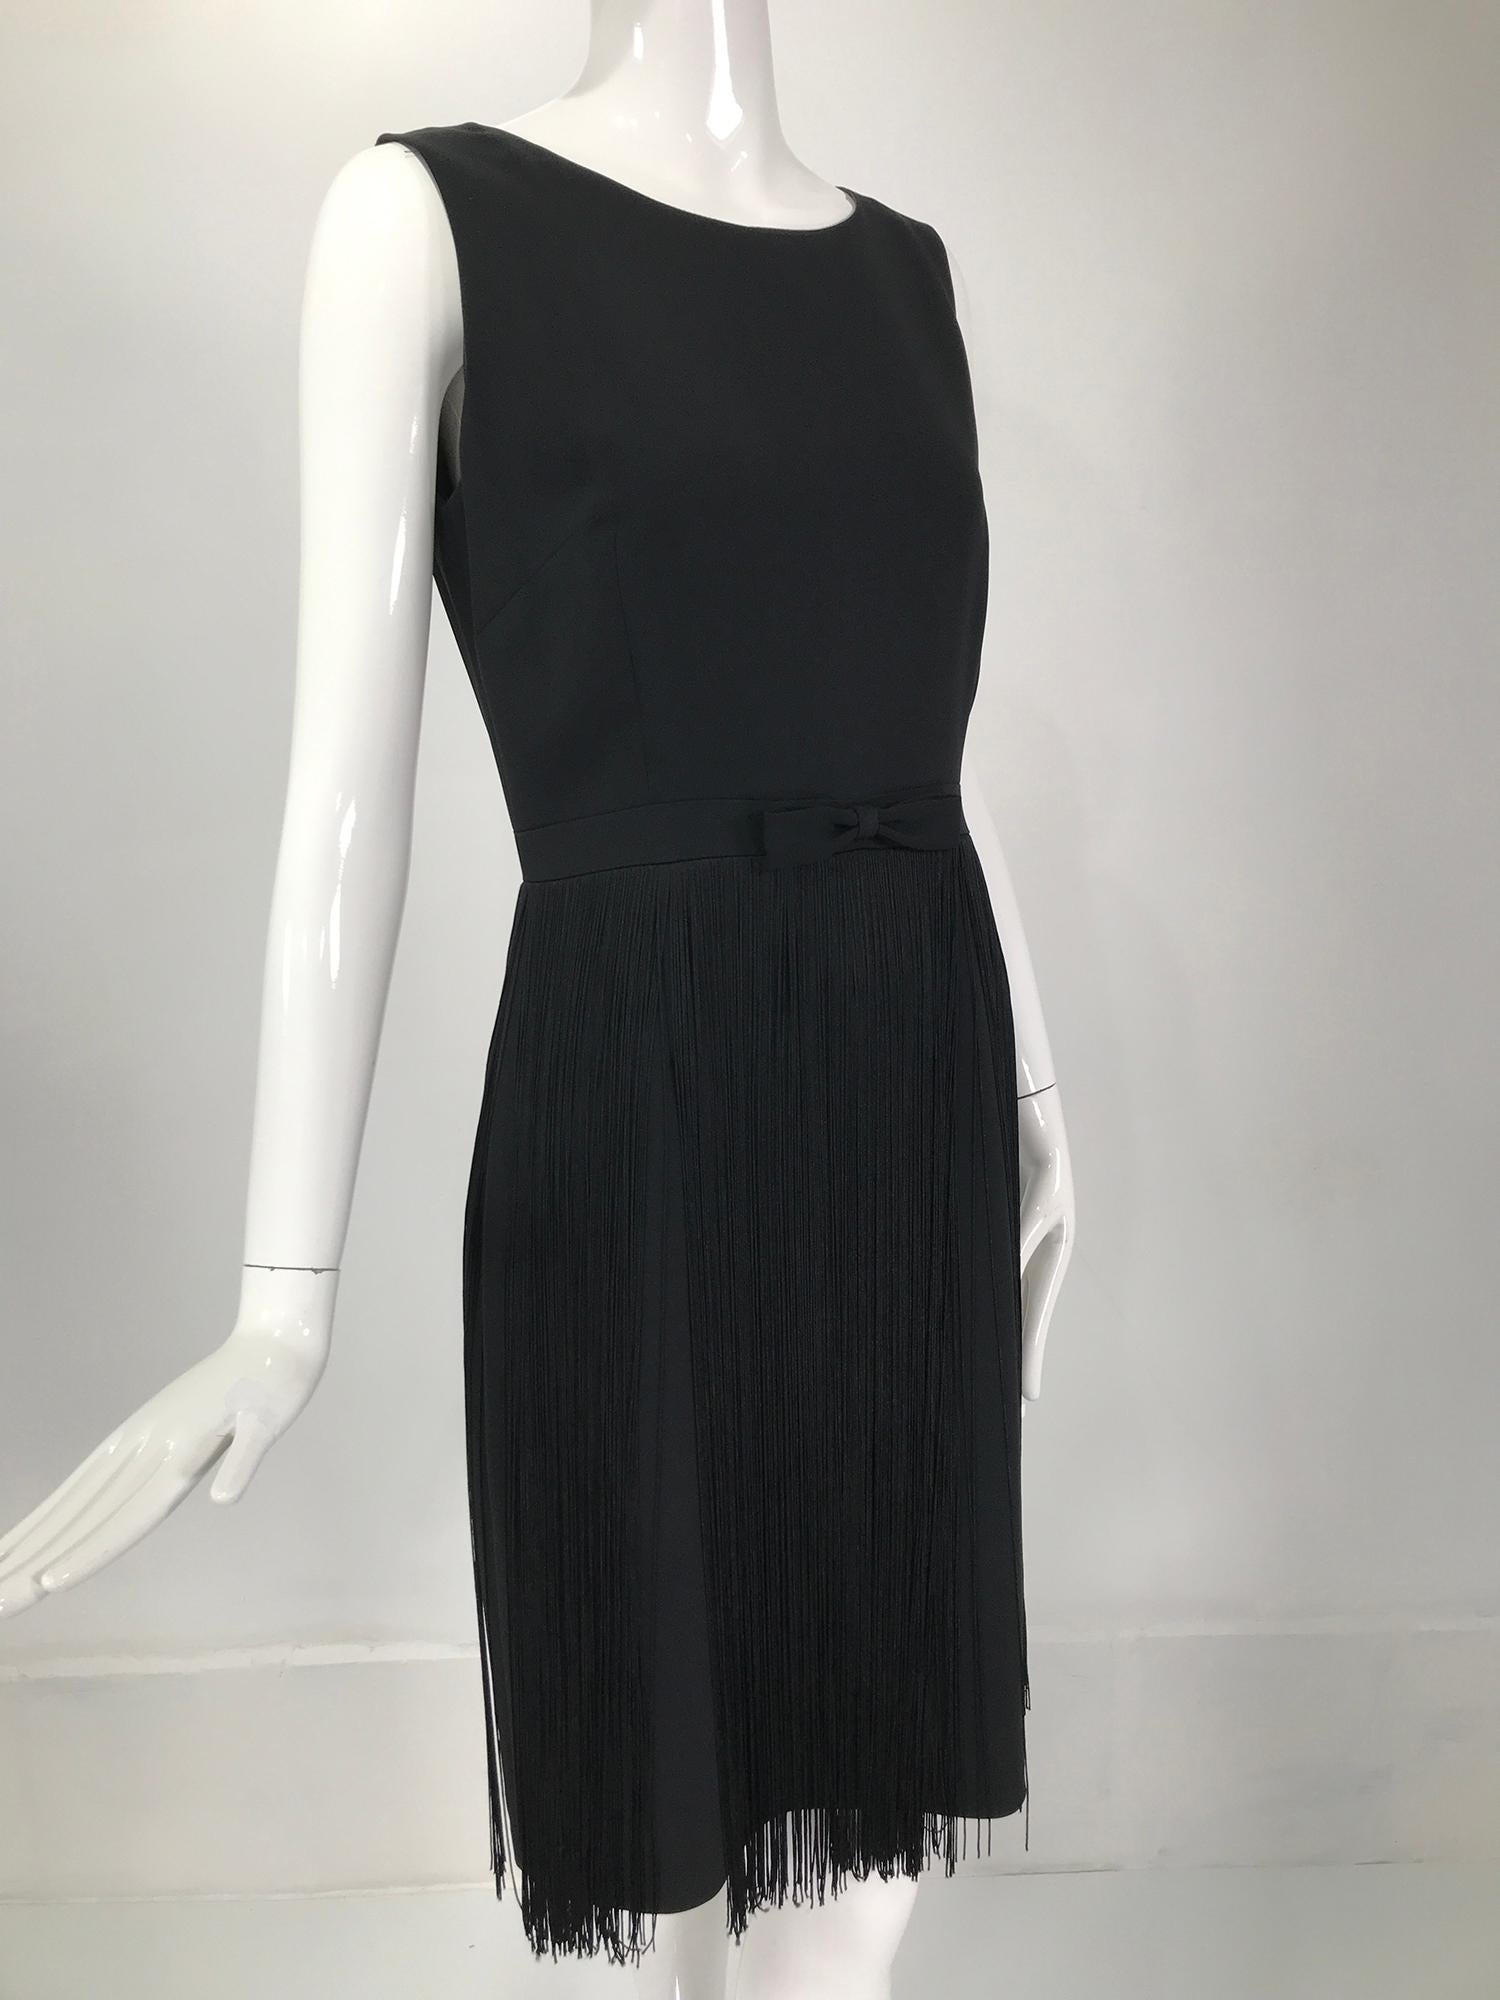 Women's Moschino Sleeveless Black Crepe Bow Waist Fringe Skirt Dress 1990s For Sale